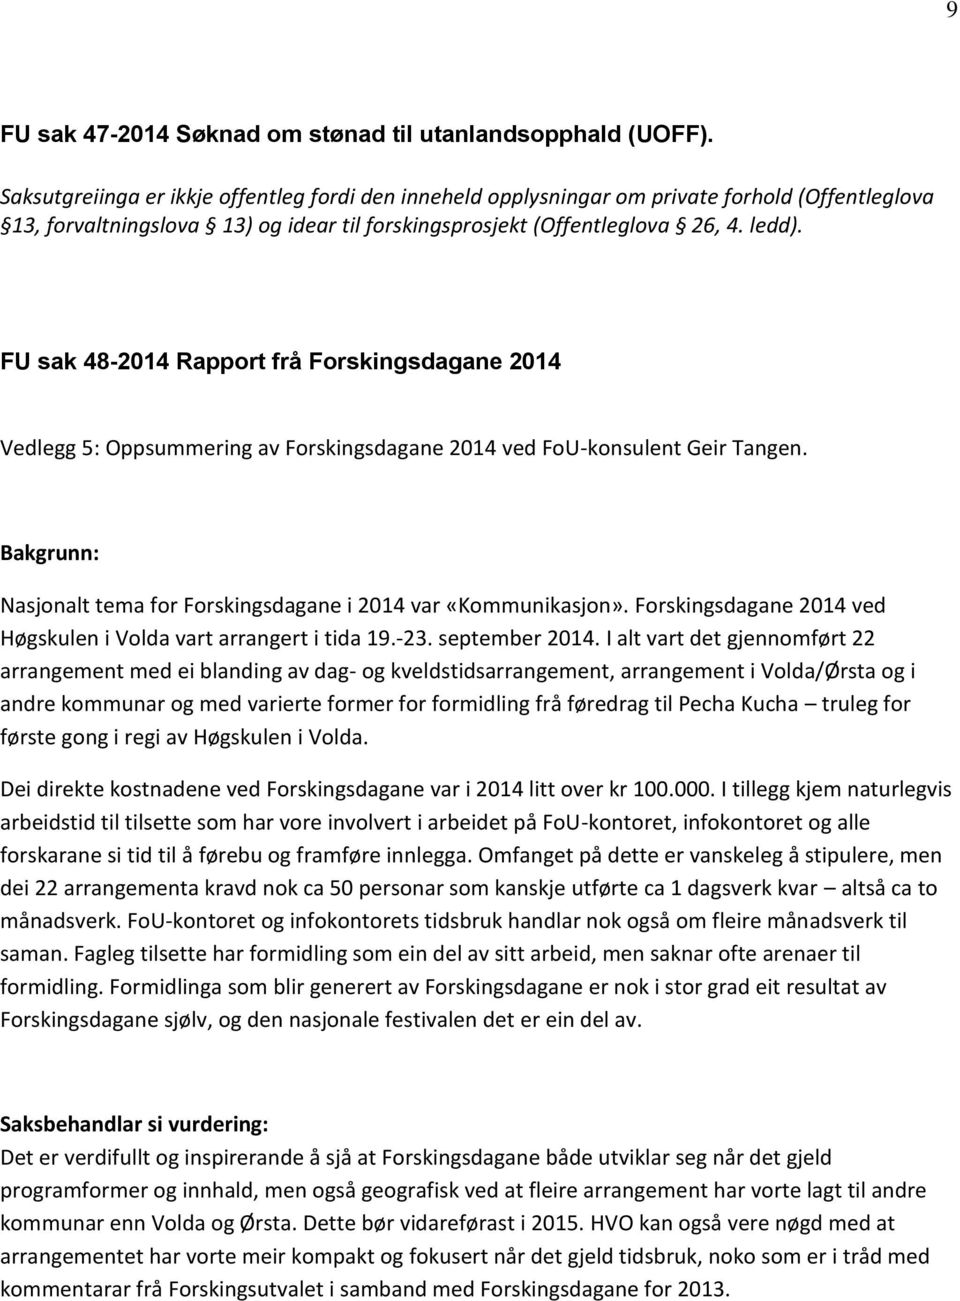 FU sak 48-2014 Rapport frå Forskingsdagane 2014 Vedlegg 5: Oppsummering av Forskingsdagane 2014 ved FoU-konsulent Geir Tangen. Bakgrunn: Nasjonalt tema for Forskingsdagane i 2014 var «Kommunikasjon».